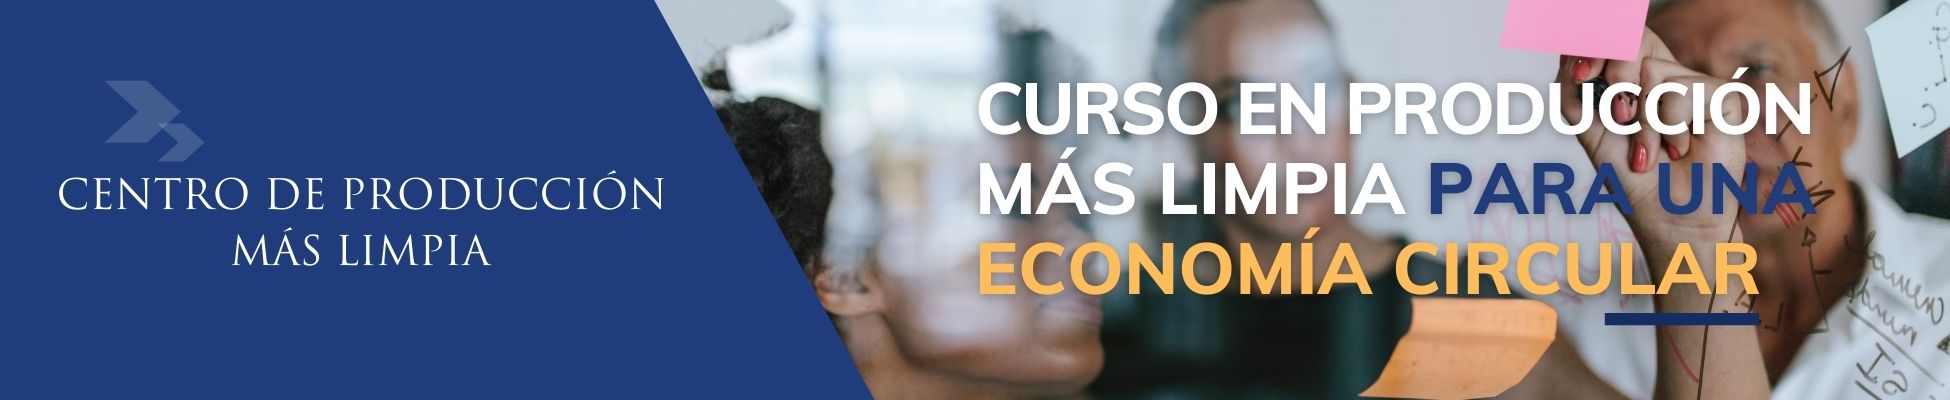 Curso en Producción más Limpia para una economía circular de la Universidad de Montevideo